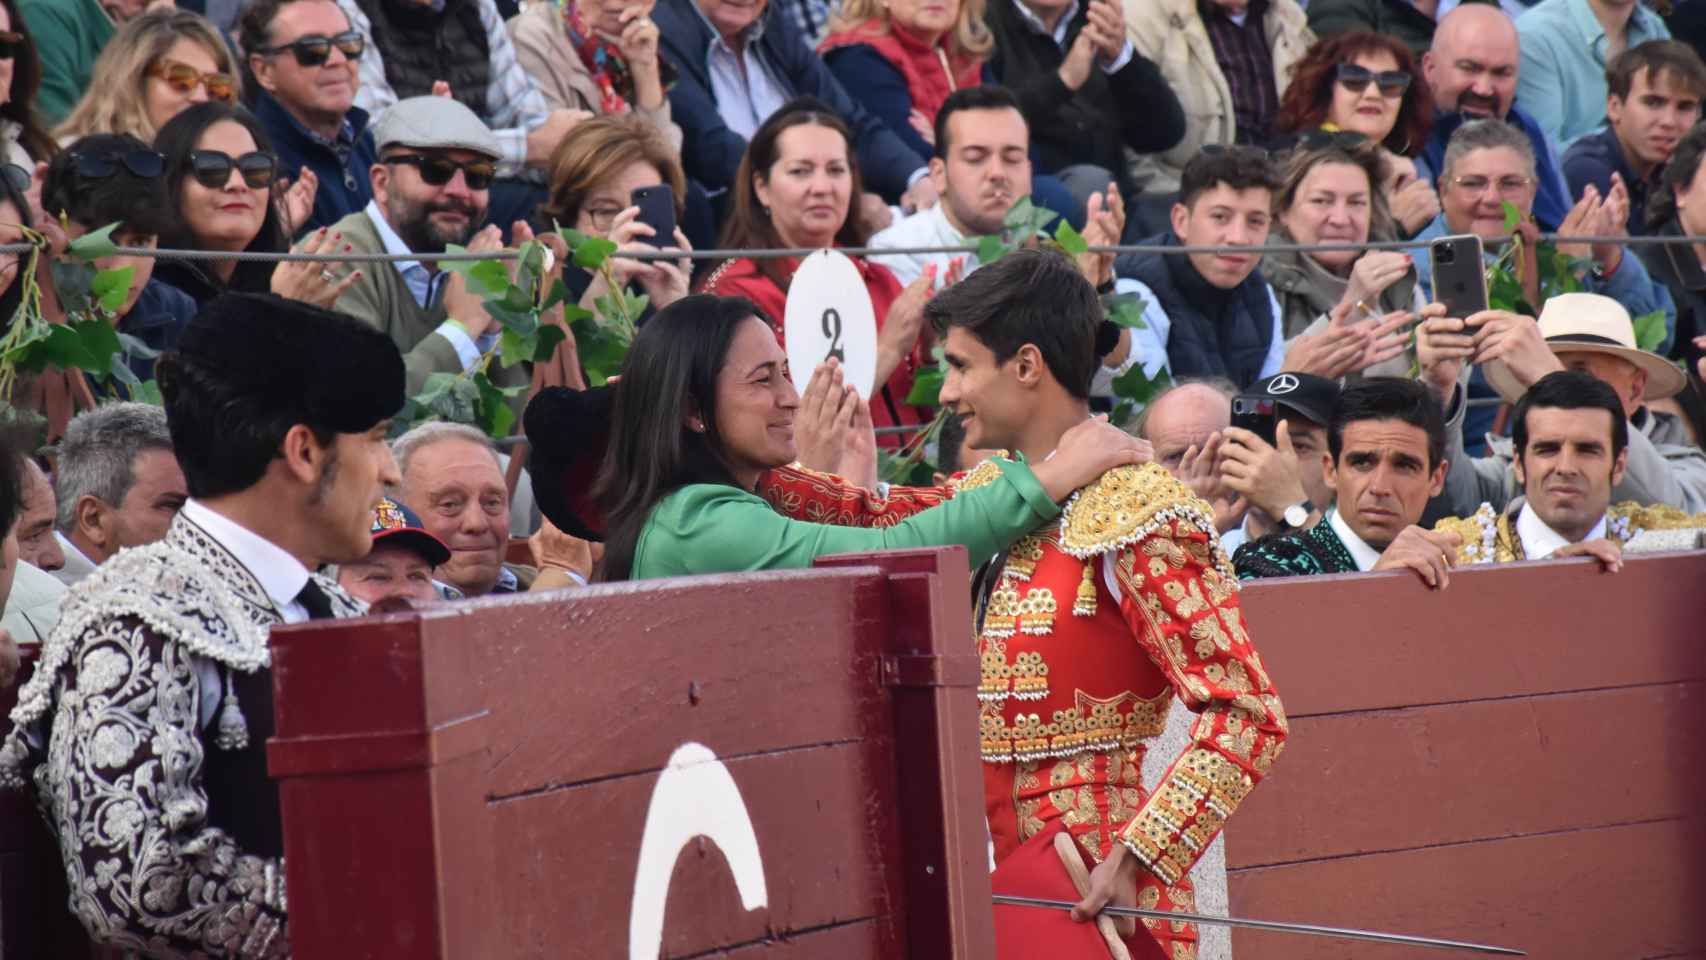 Manuel Diosleguarde brinda el toro a la doctora Marta Pérez López, quien con su equipo en la enfermería del coso segoviano evitaron un trágico desenlace al conseguir cortar la hemorragia y estabilizar al herido hasta llegar a Valladolid